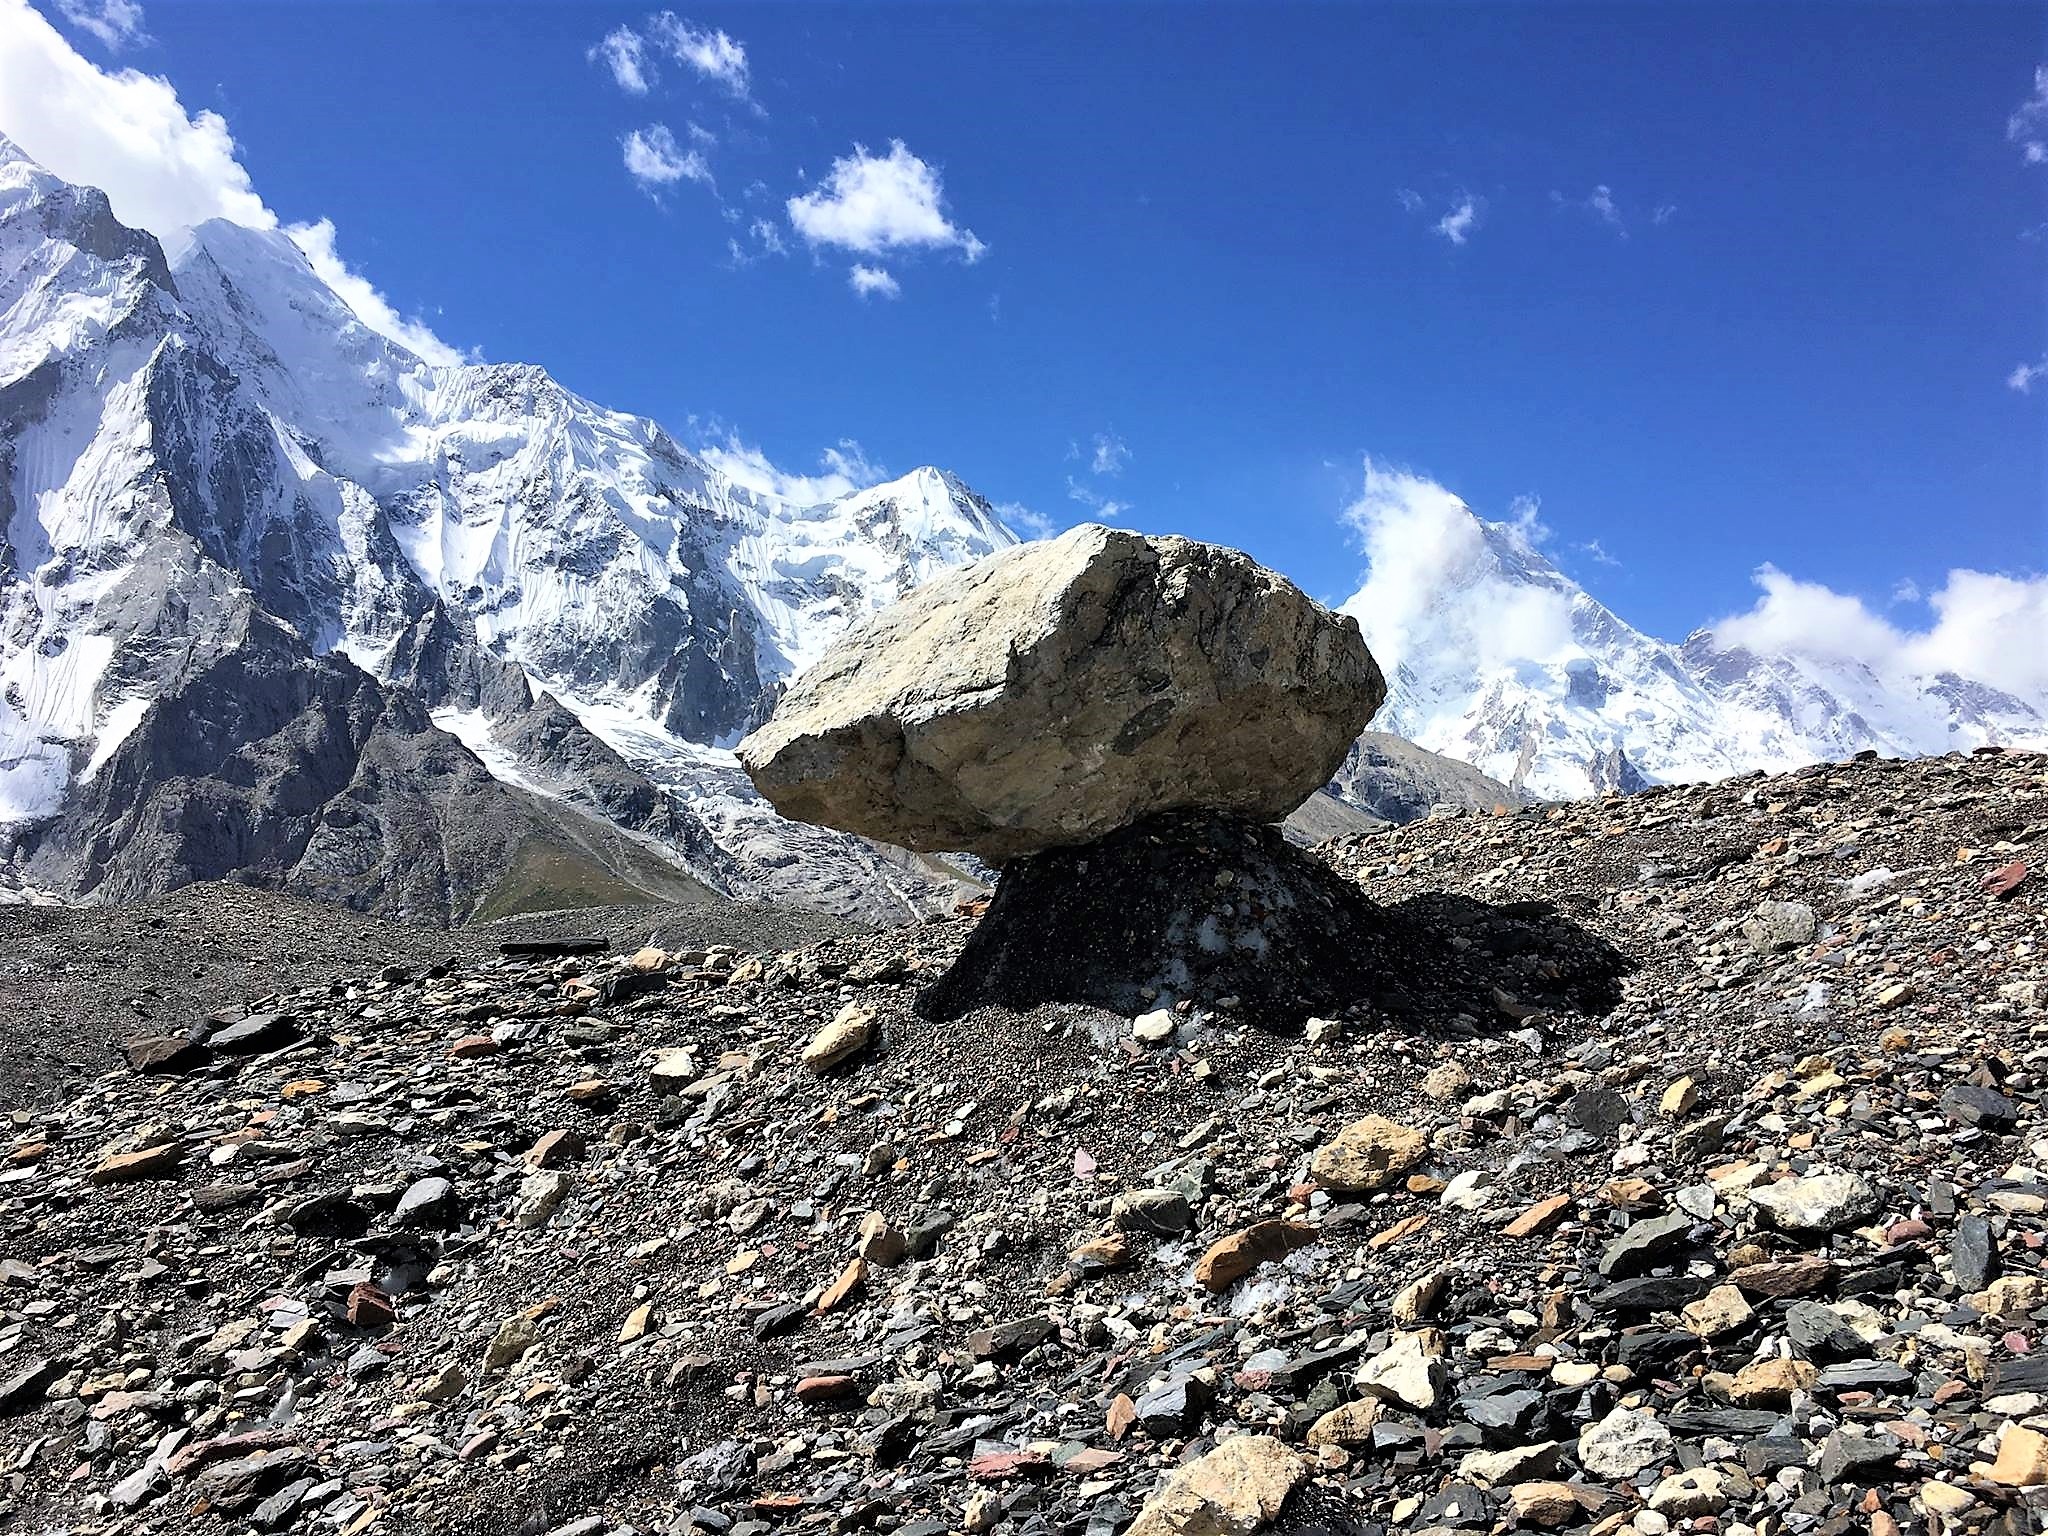 K2 Basecamp Trek: The Throne Room of The Mountain Gods